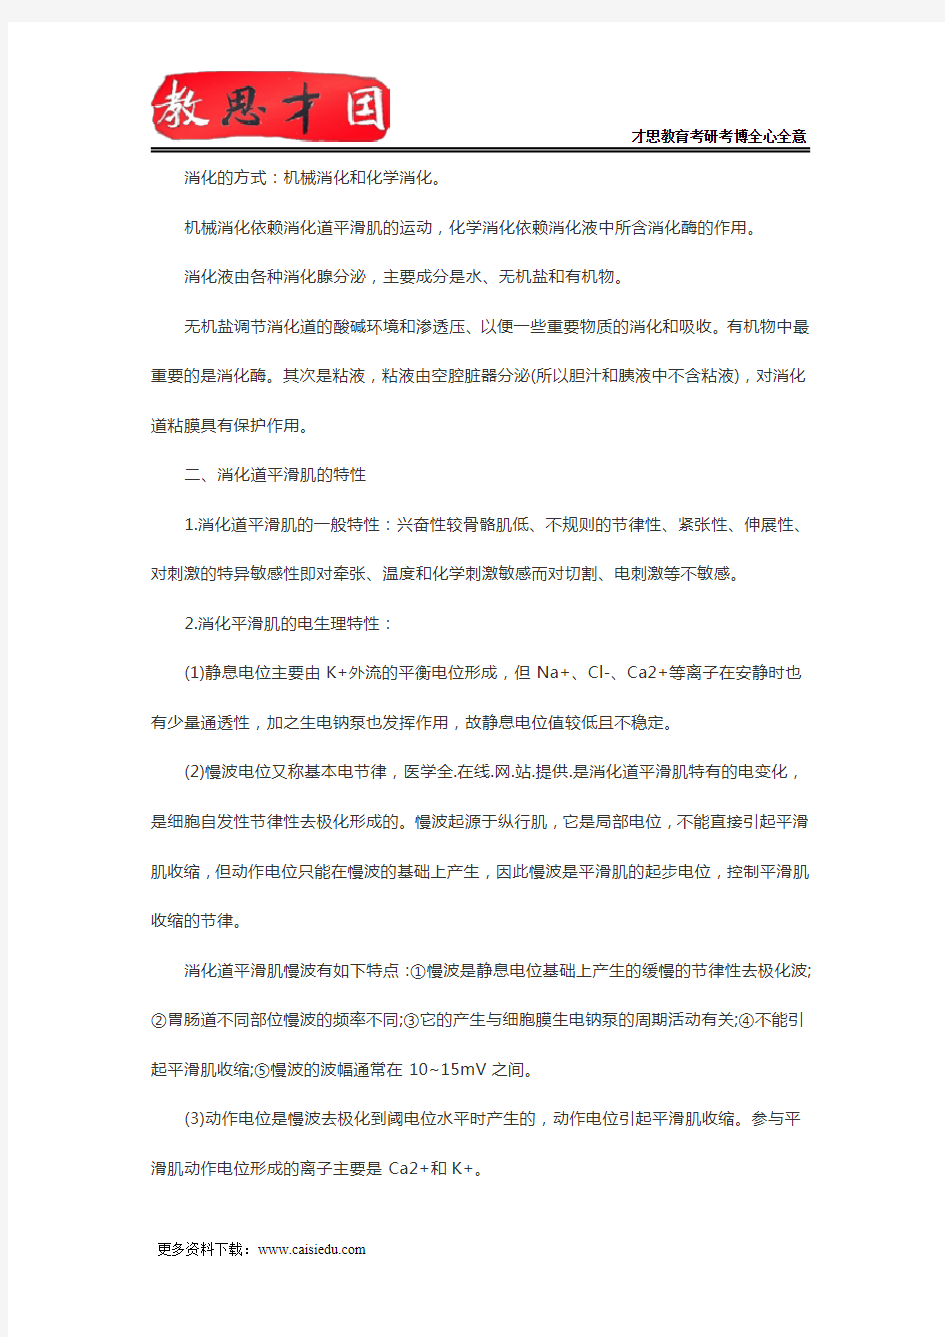 2016年北京大学医学部306西医综合考研生理学复习笔记(十一)